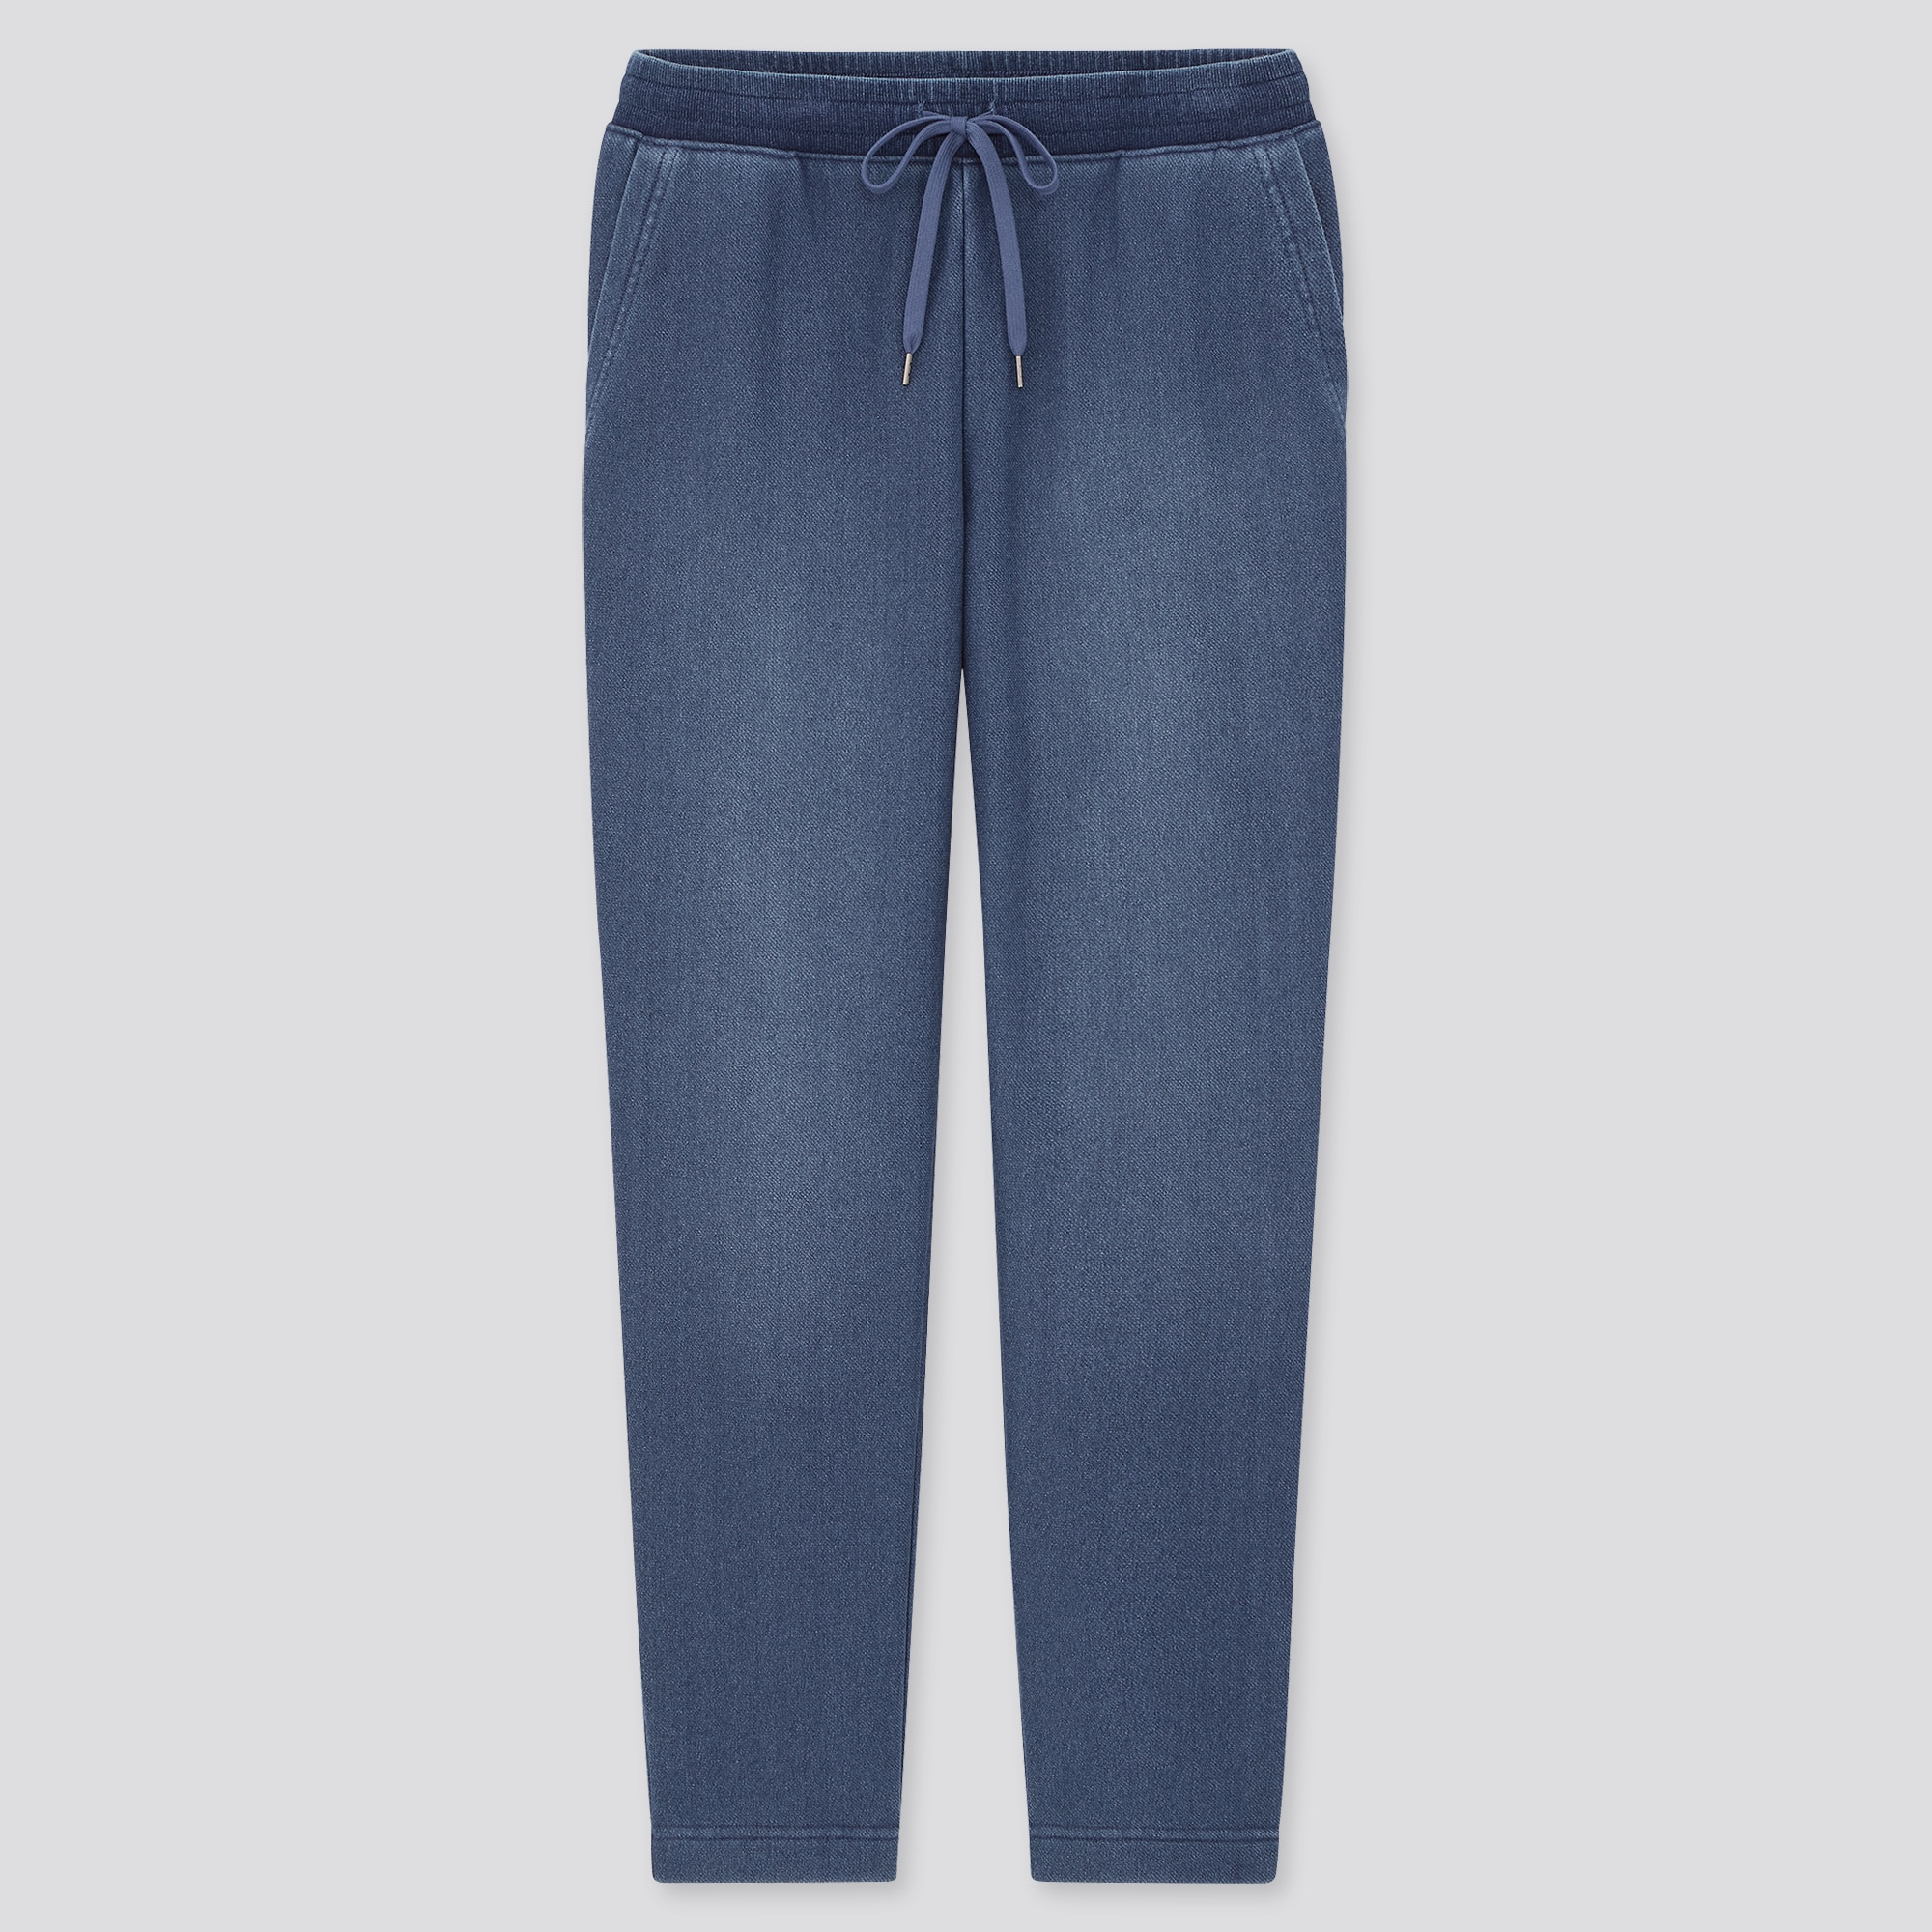 fleece lined blue jeans